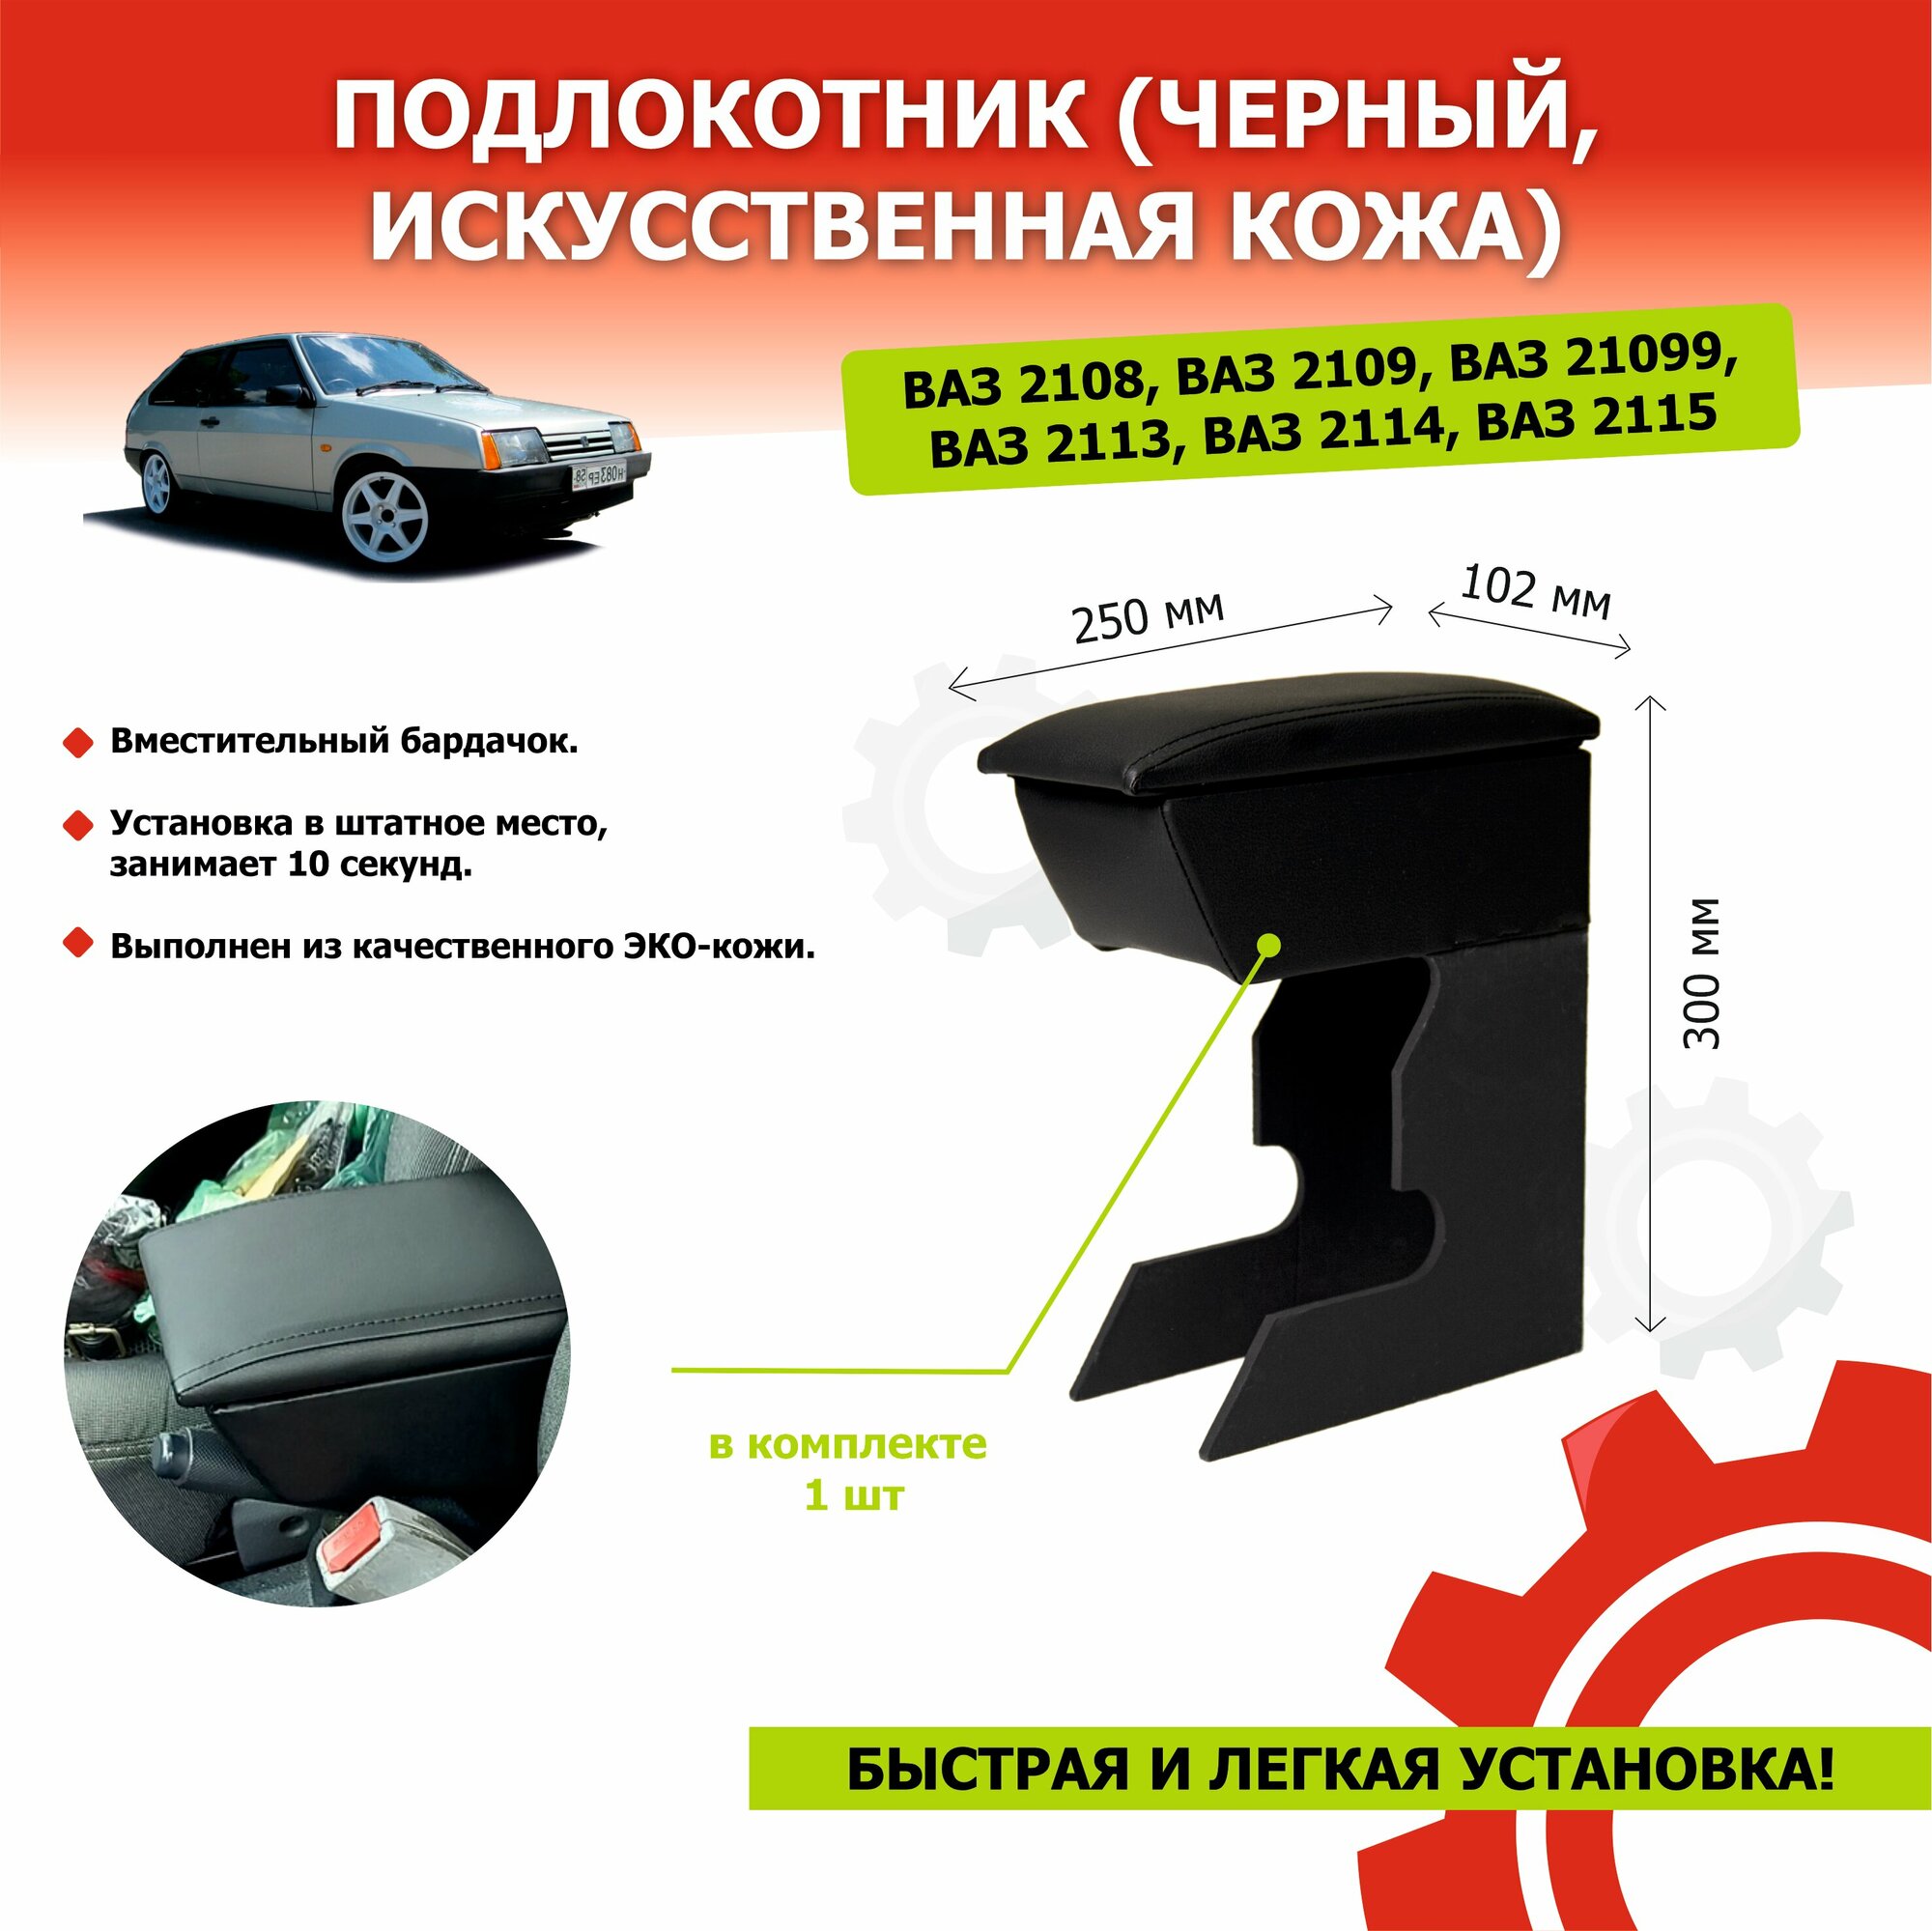 Подлокотник для автомобиля Lada 2108, 2109, 21099, 2113, 2114, 2115 черный, искусственная кожа KIHOBOX АРТ 3001902